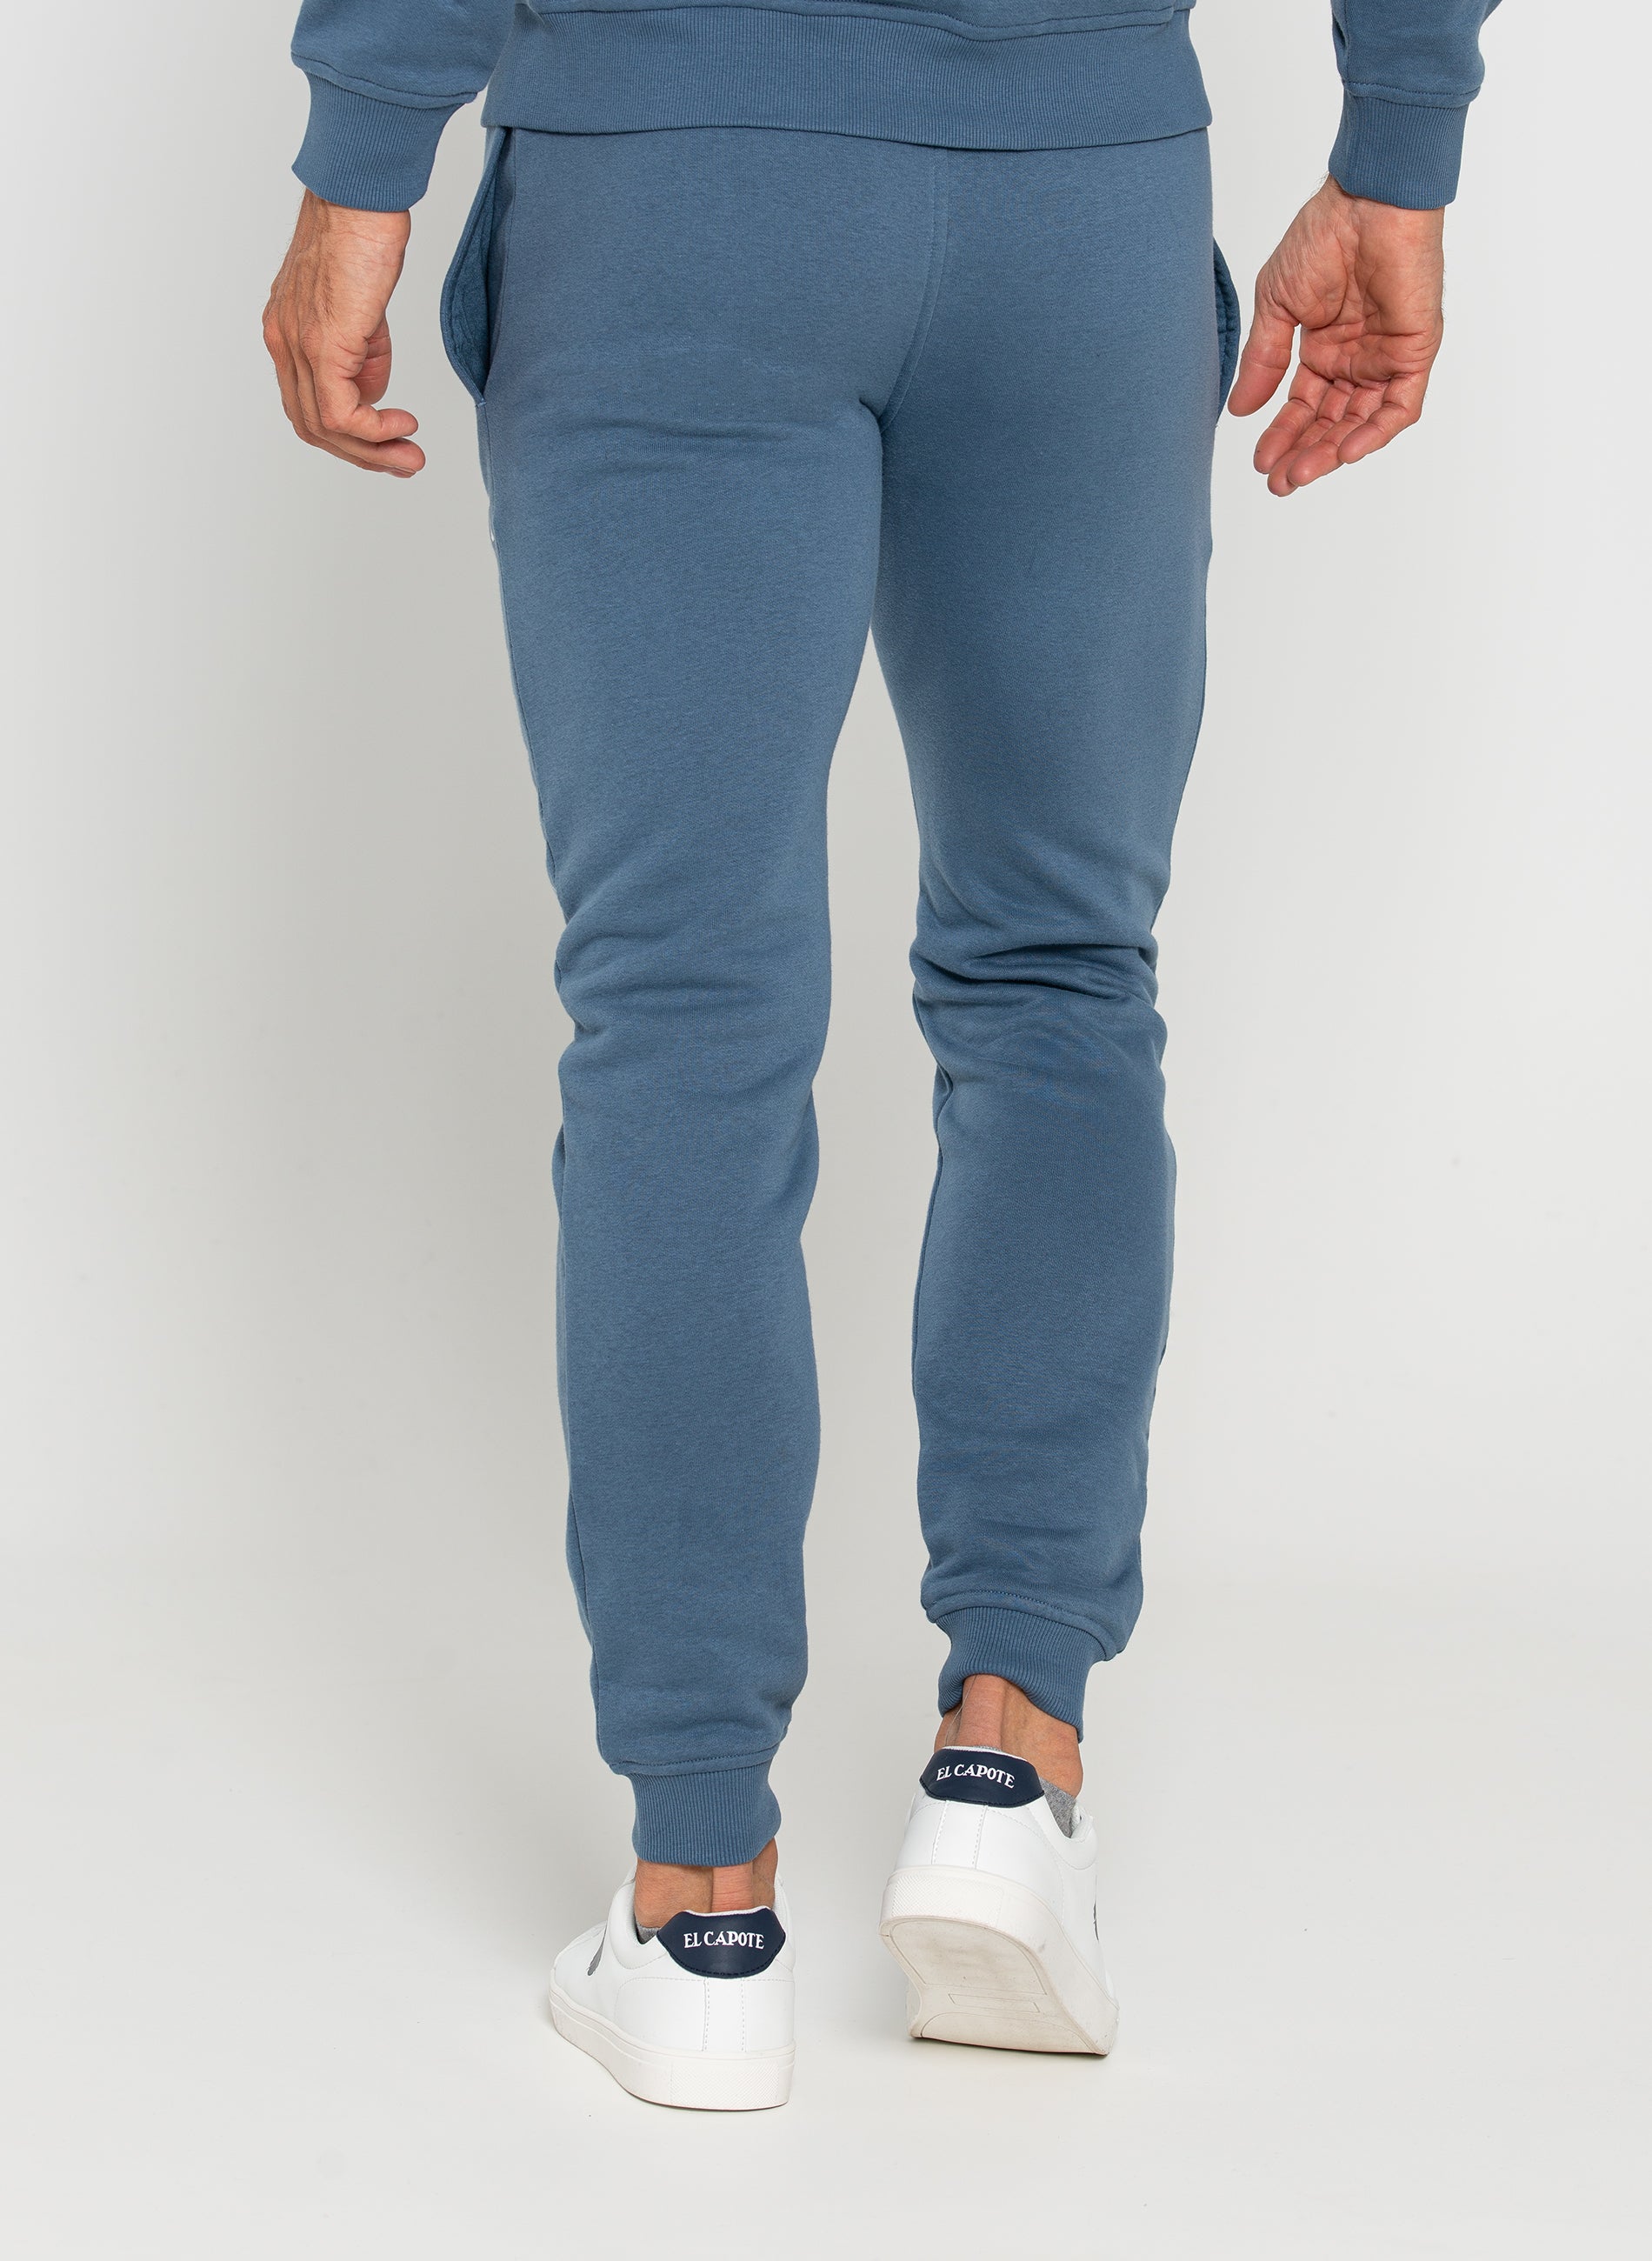 Men's Lavender Blue Tracksuit Pants Classic